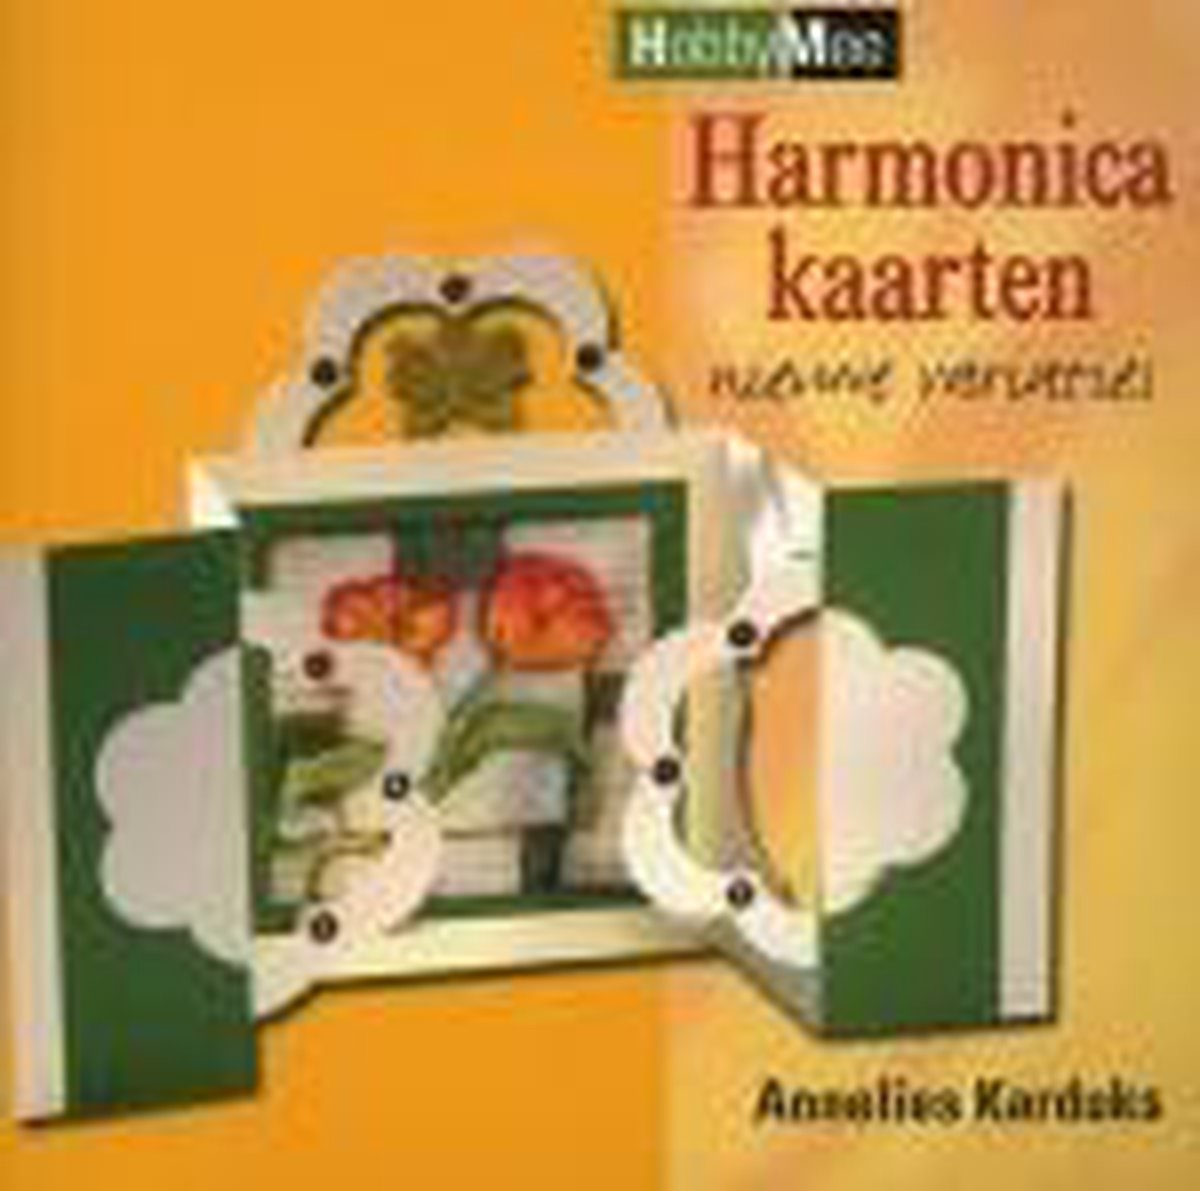 Harmonicakaarten nieuwe variaties / Hobby Mee